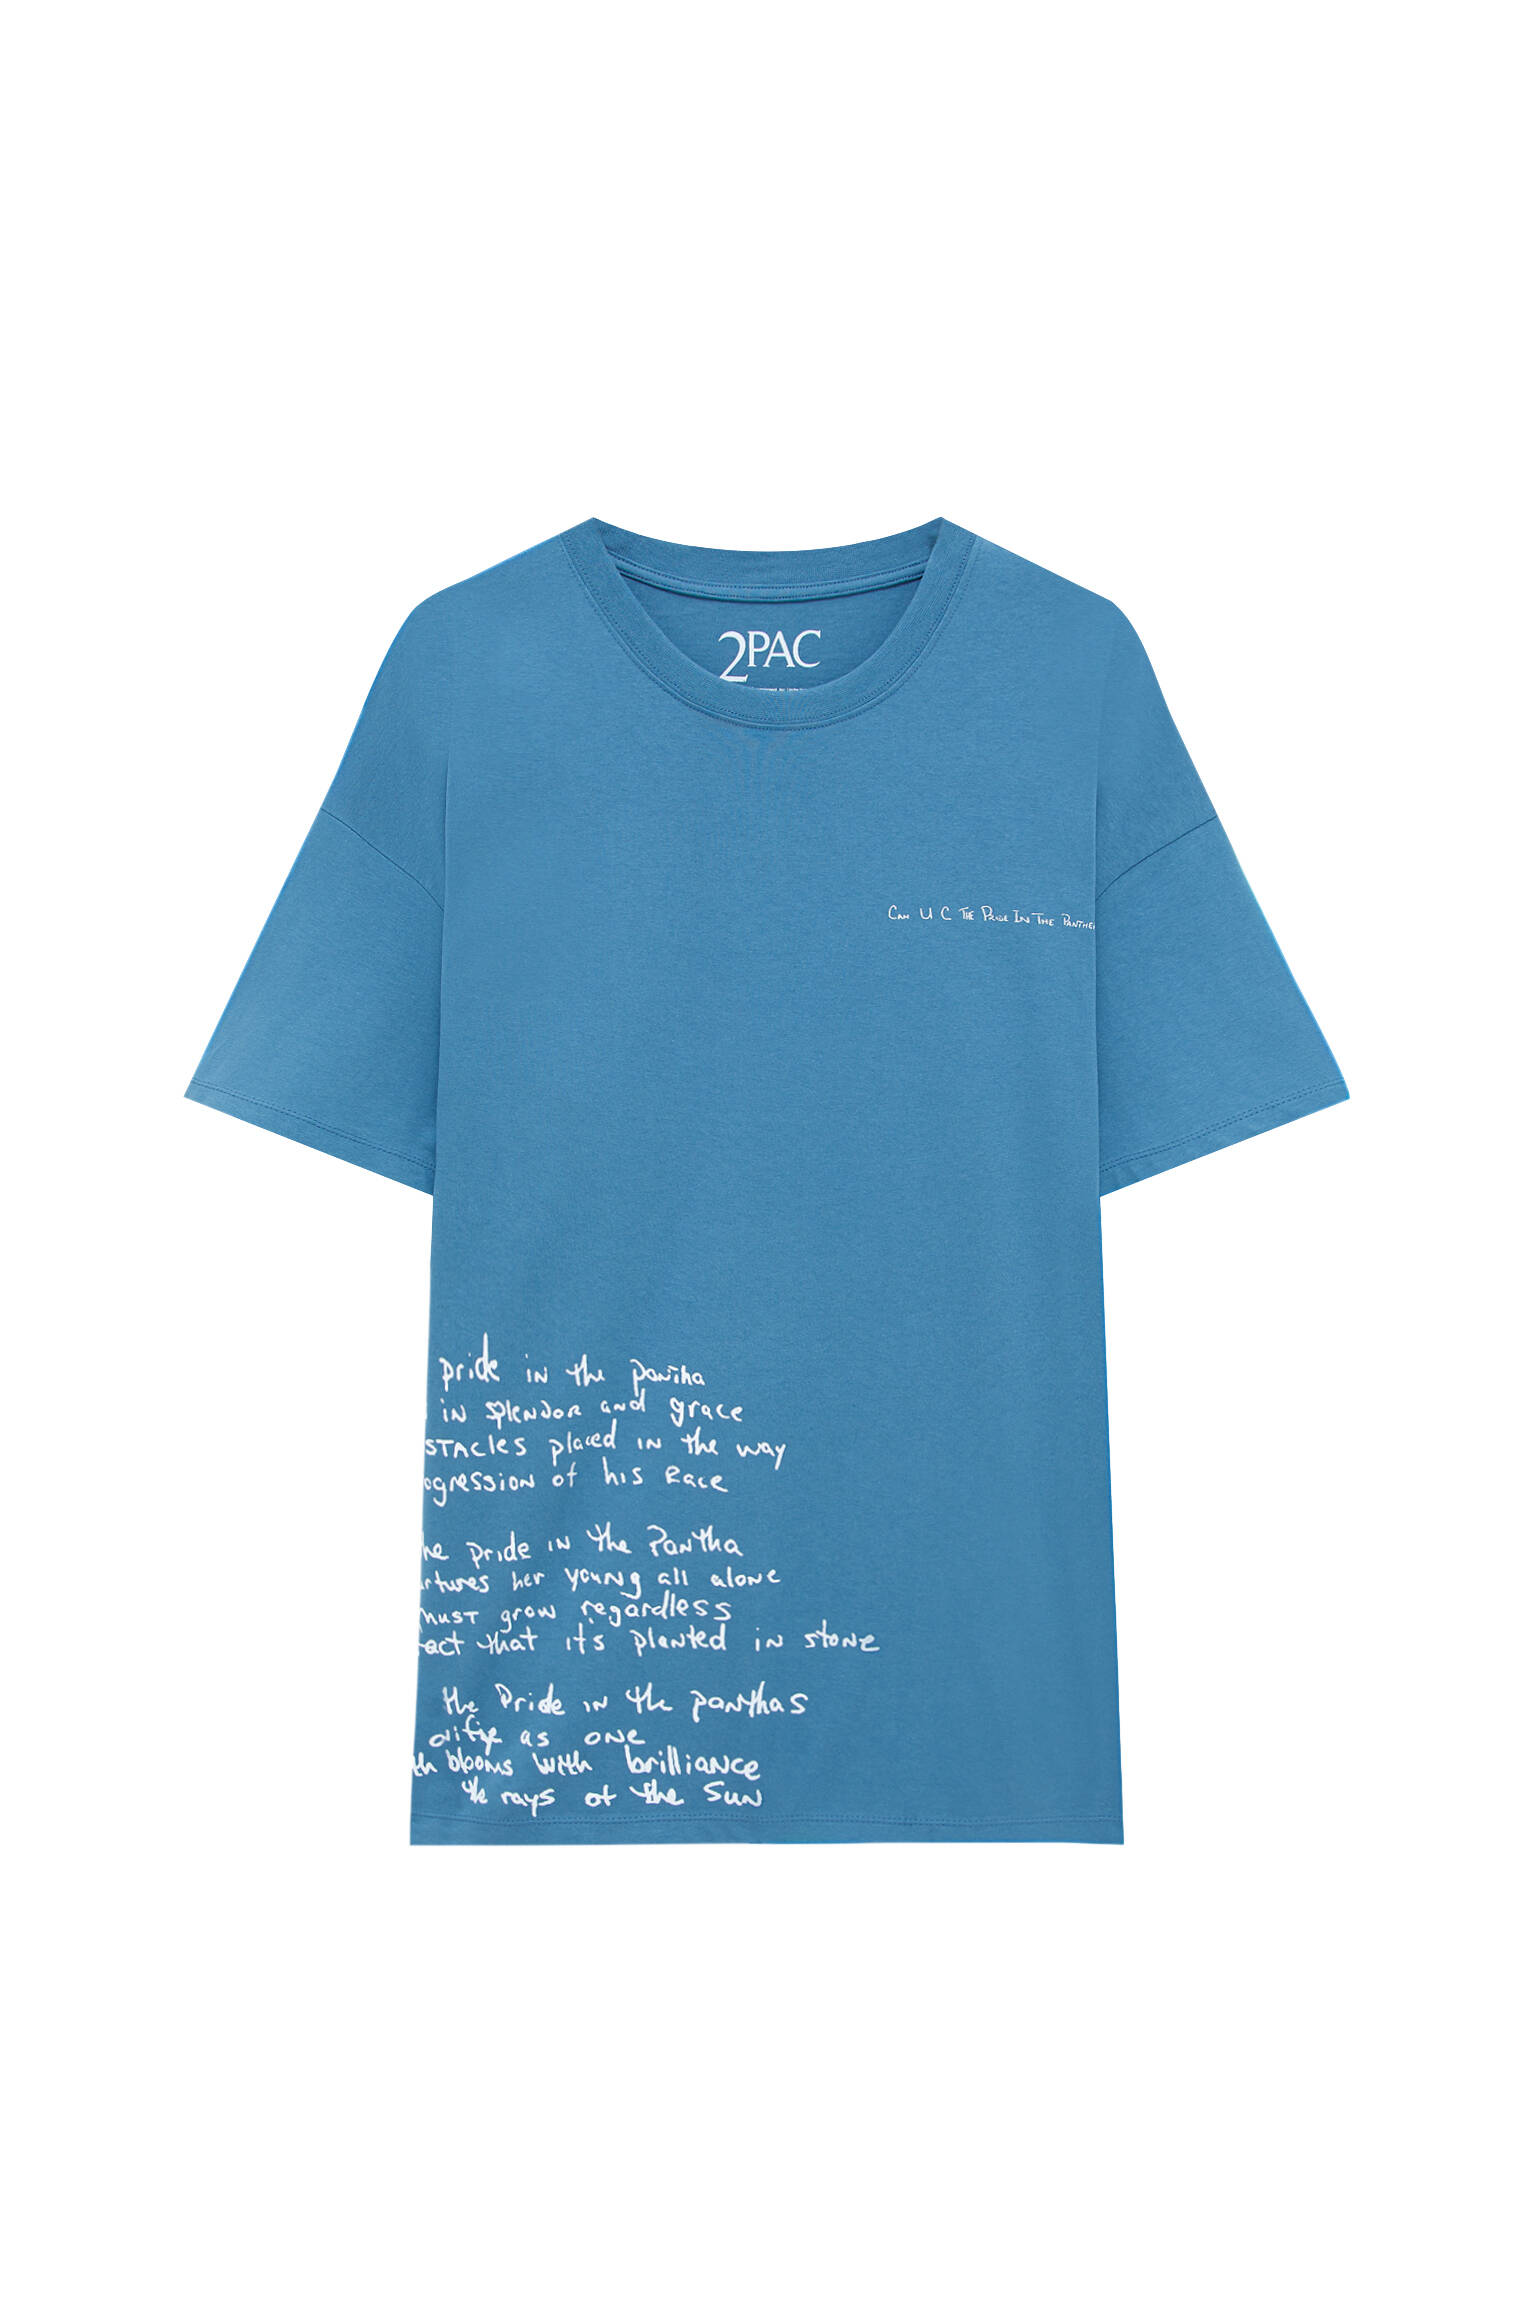 Pull&bear Homme T-shirt Bleu En Coton à Manches Courtes Et Col Rond, Avec Illustration Contrastante De Tupac. Bleu Profond S